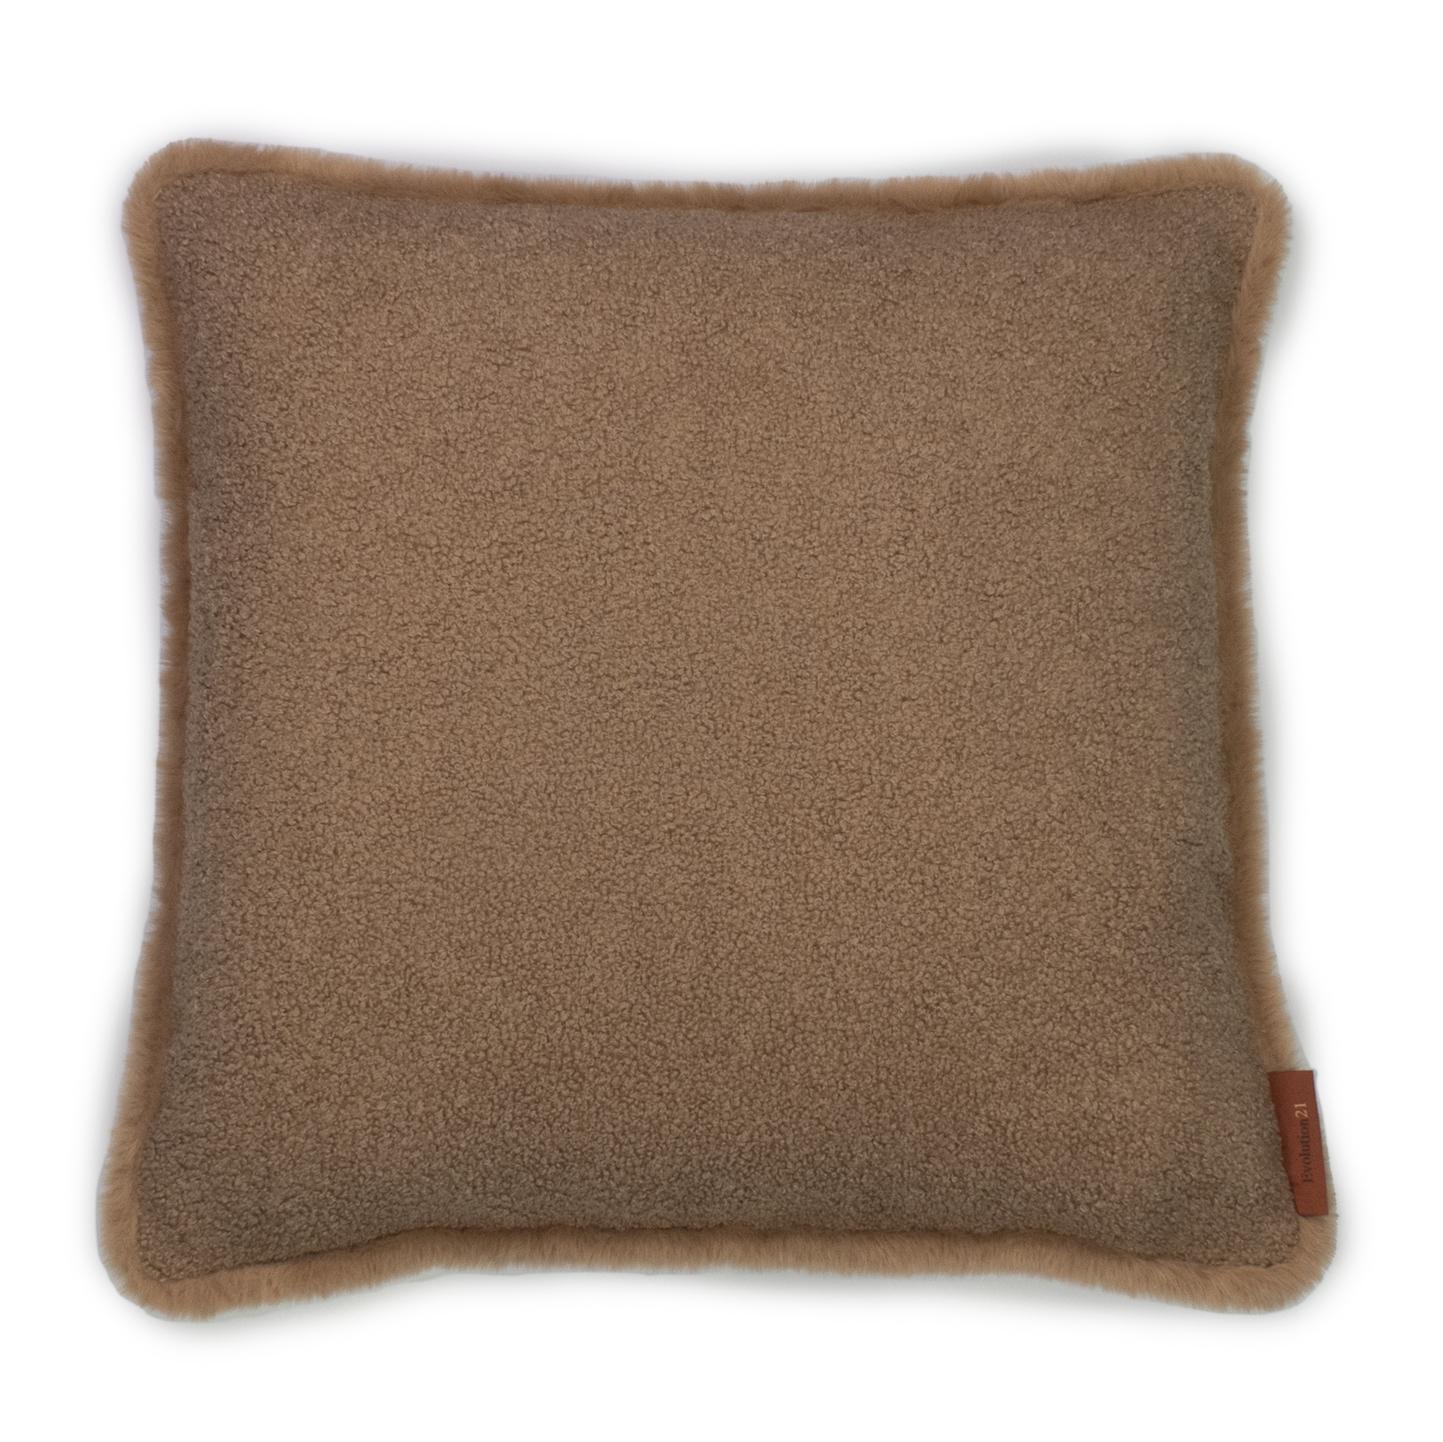 Belgian Modern Textured Throw Pillow Tiramisu Brown 